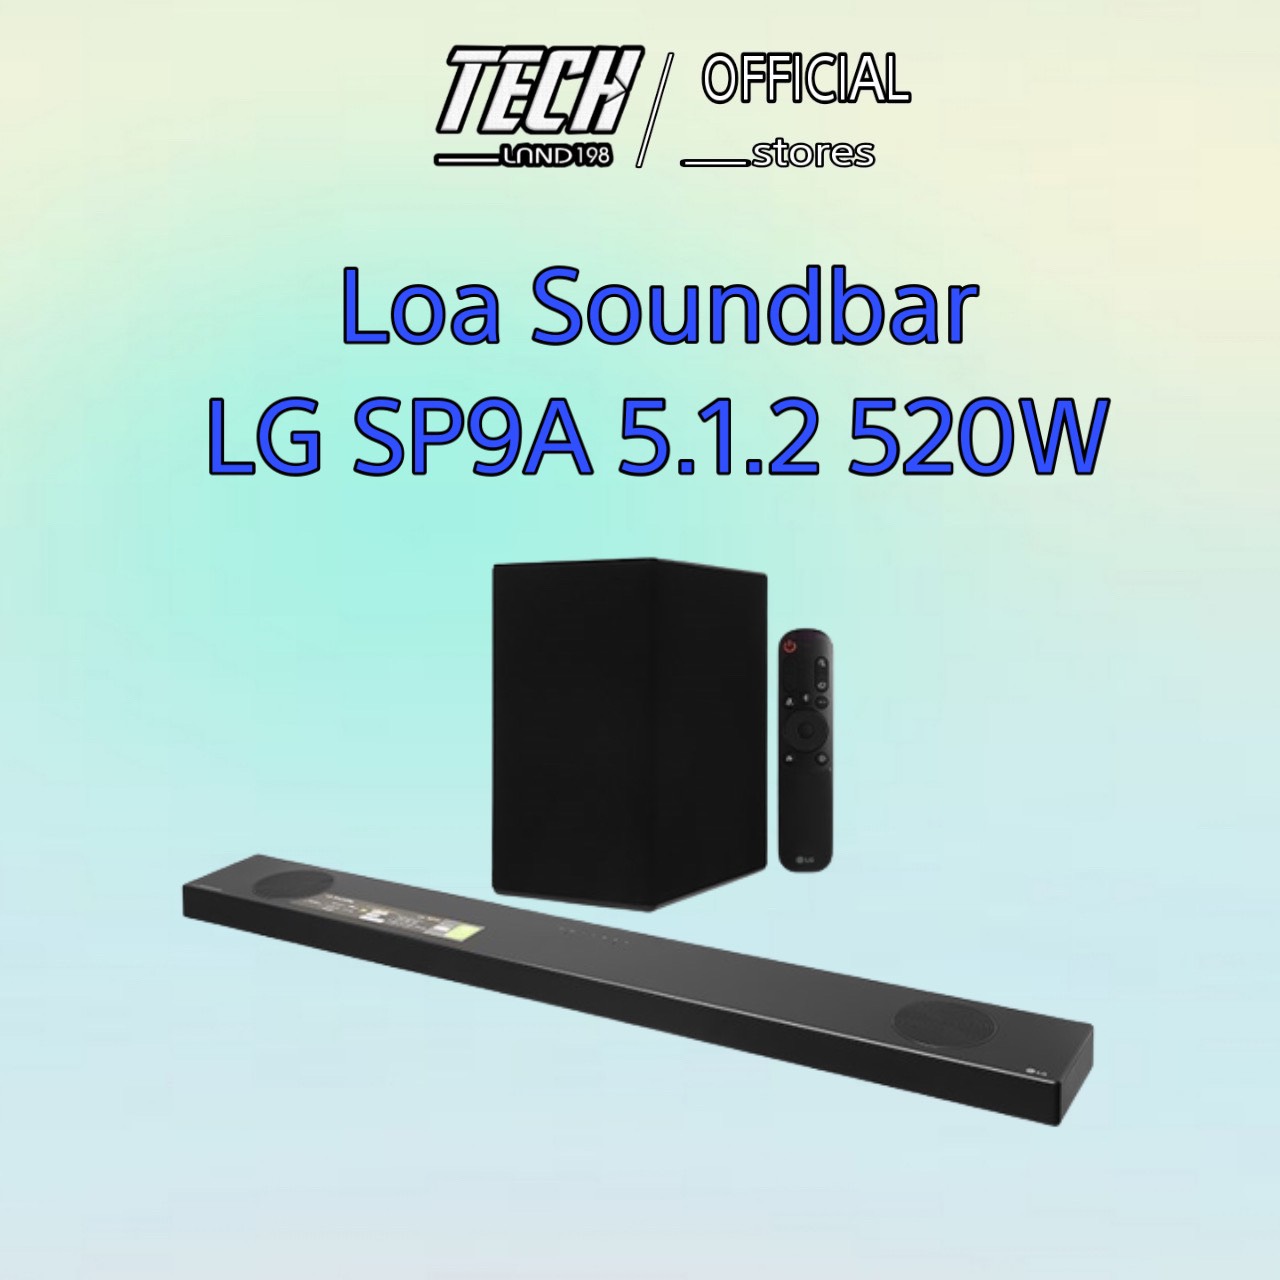 Loa Soundbar LG SP9A 5.1.2 520W Hires Audio